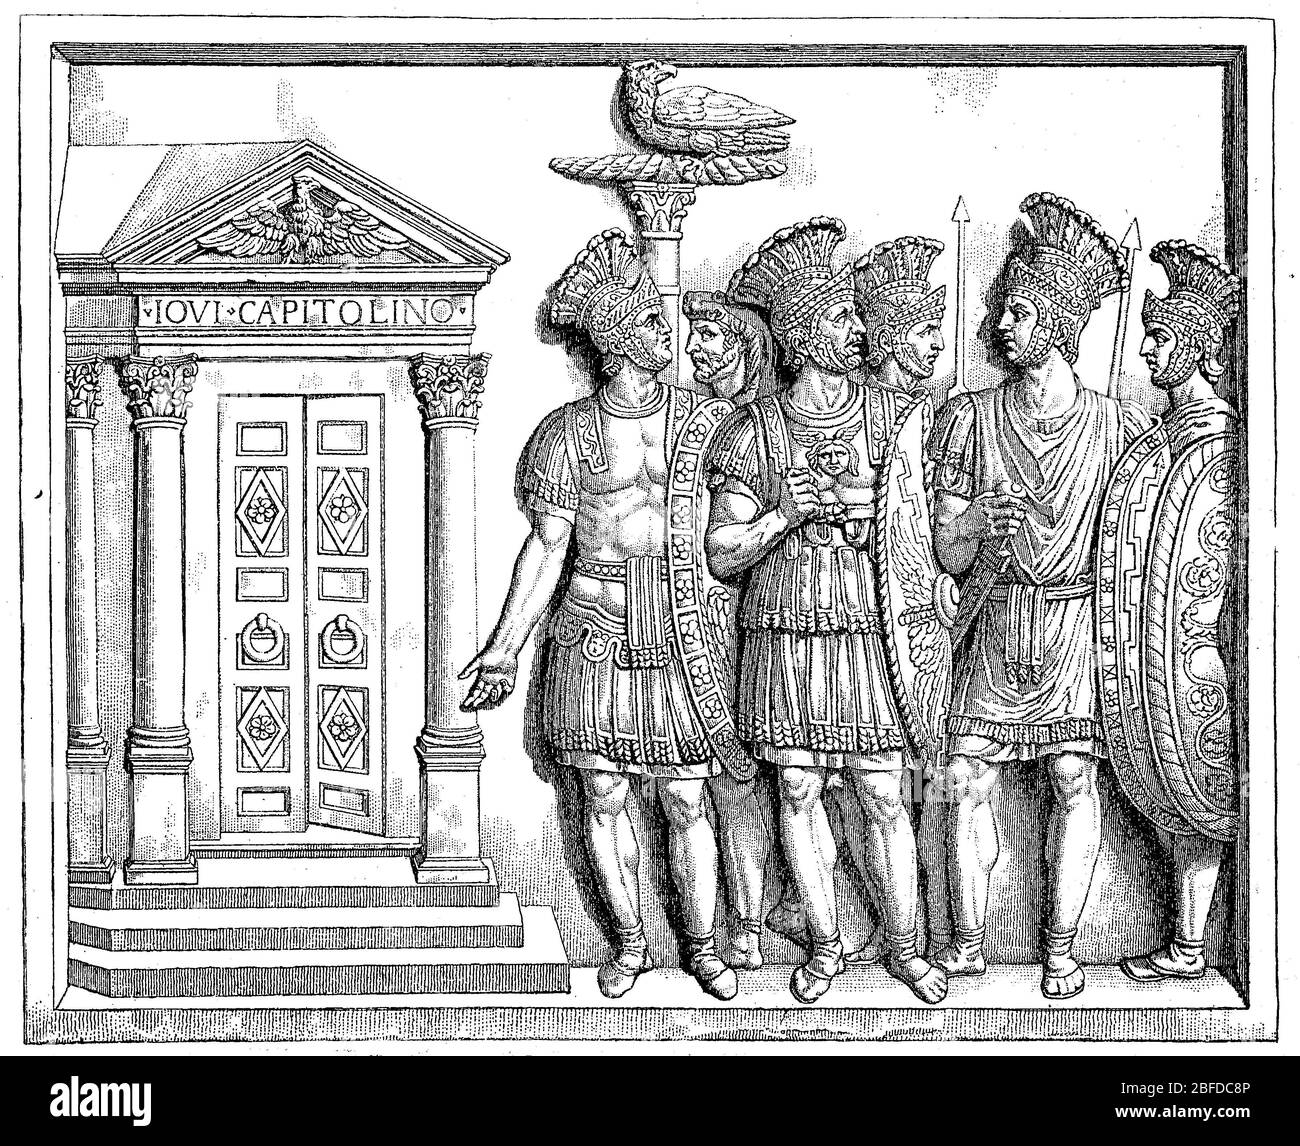 Praetorian Garde, Praetorian, Praetoriani, war eine Garde Truppe, Welche von den römischen Kaisern verwendet wurde, um 25 B.C / Prätorianergarde, Prätorianer, Praetoriani, war eine Garde-Truppe, die von den römischen Kaisern eingesetzt wurde, um 25 v.Chr., historisch, historisch, digital verbesserte Reproduktion eines Originals aus dem 19. Jahrhundert / digitale Reproduktion einer Originalvorlage aus dem 19. Jahrhundert Stockfoto